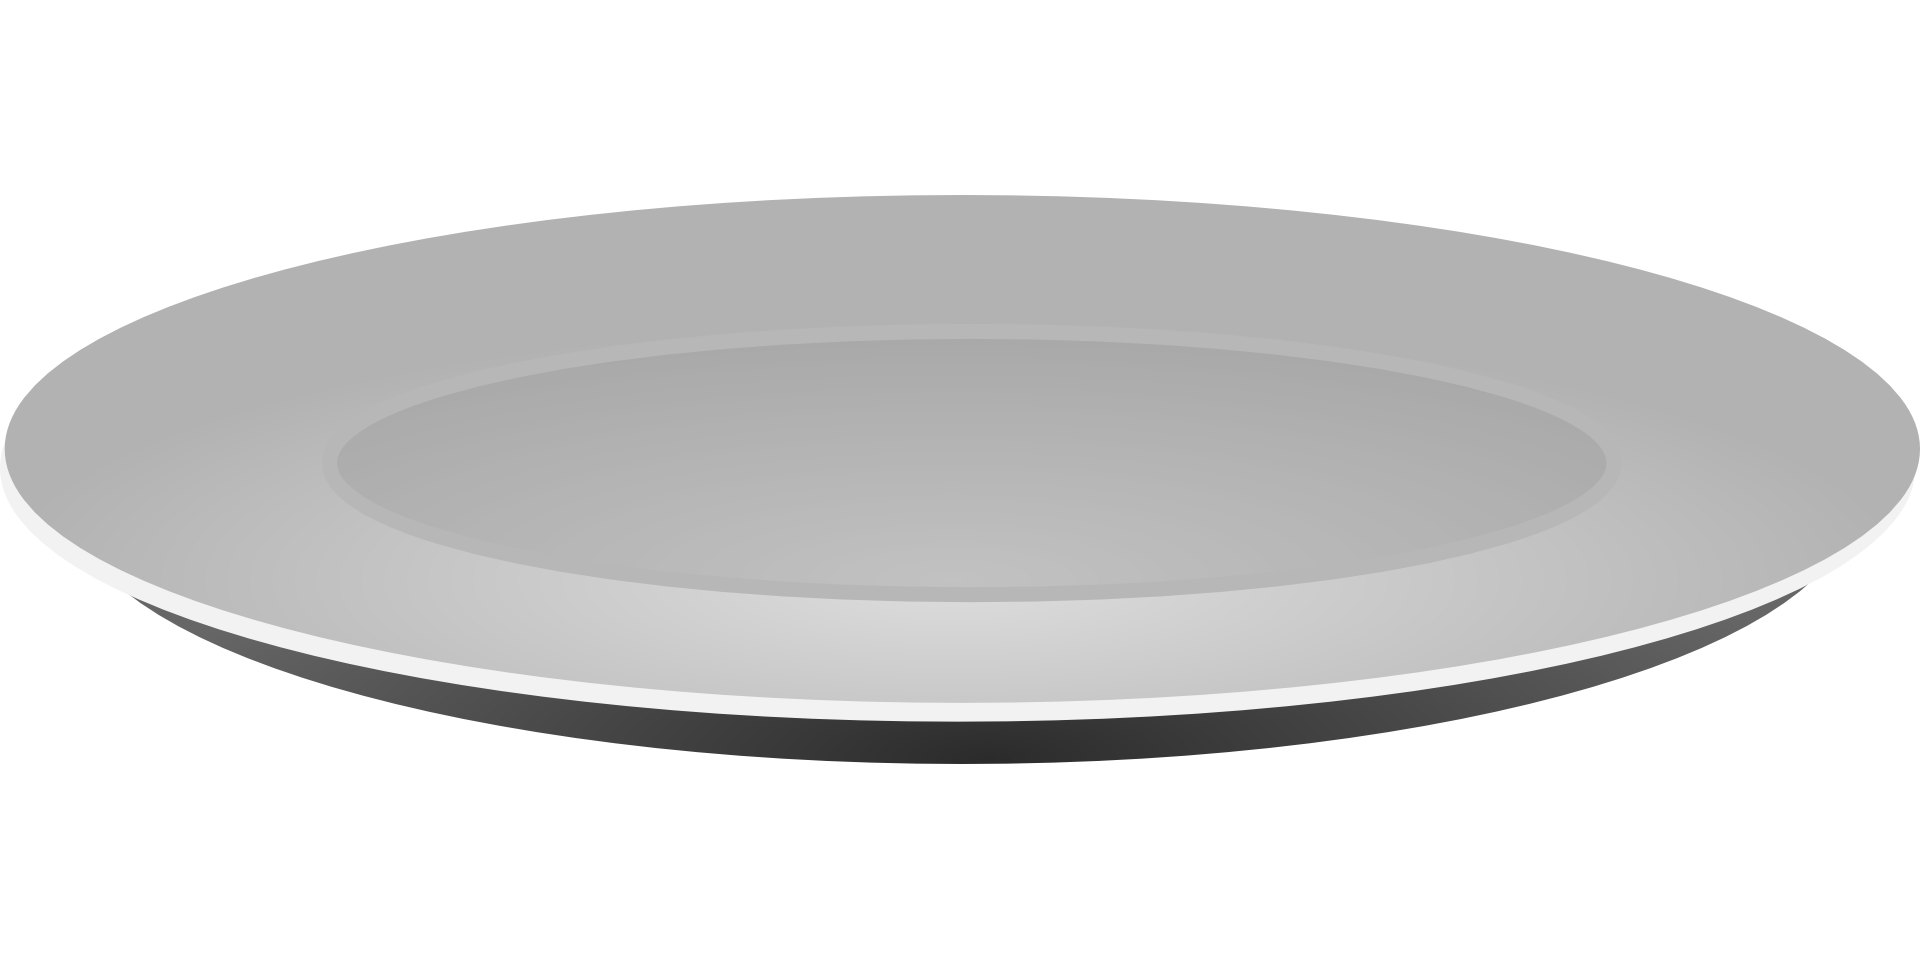 Картинка тарелка на прозрачном фоне. Тарелка сбоку вектор. Тарелка вектор вид сбоку. Тарелка без фона. Тарелка на прозрачном фоне.